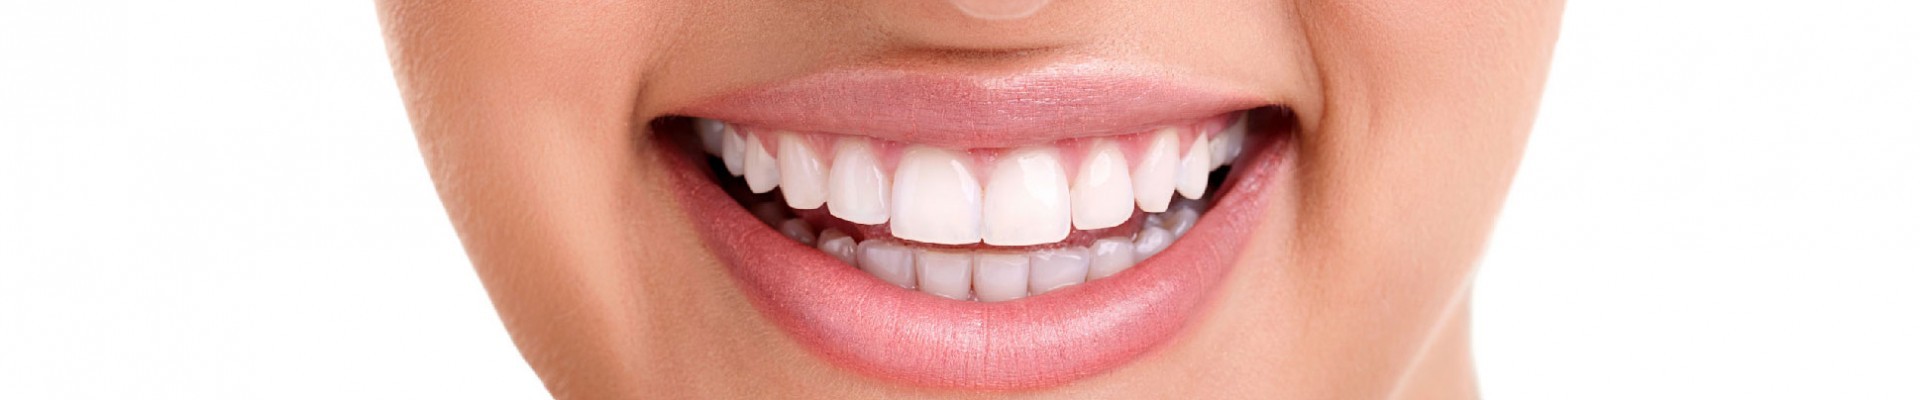 Tetracycline teeth discoloration or dark teeth